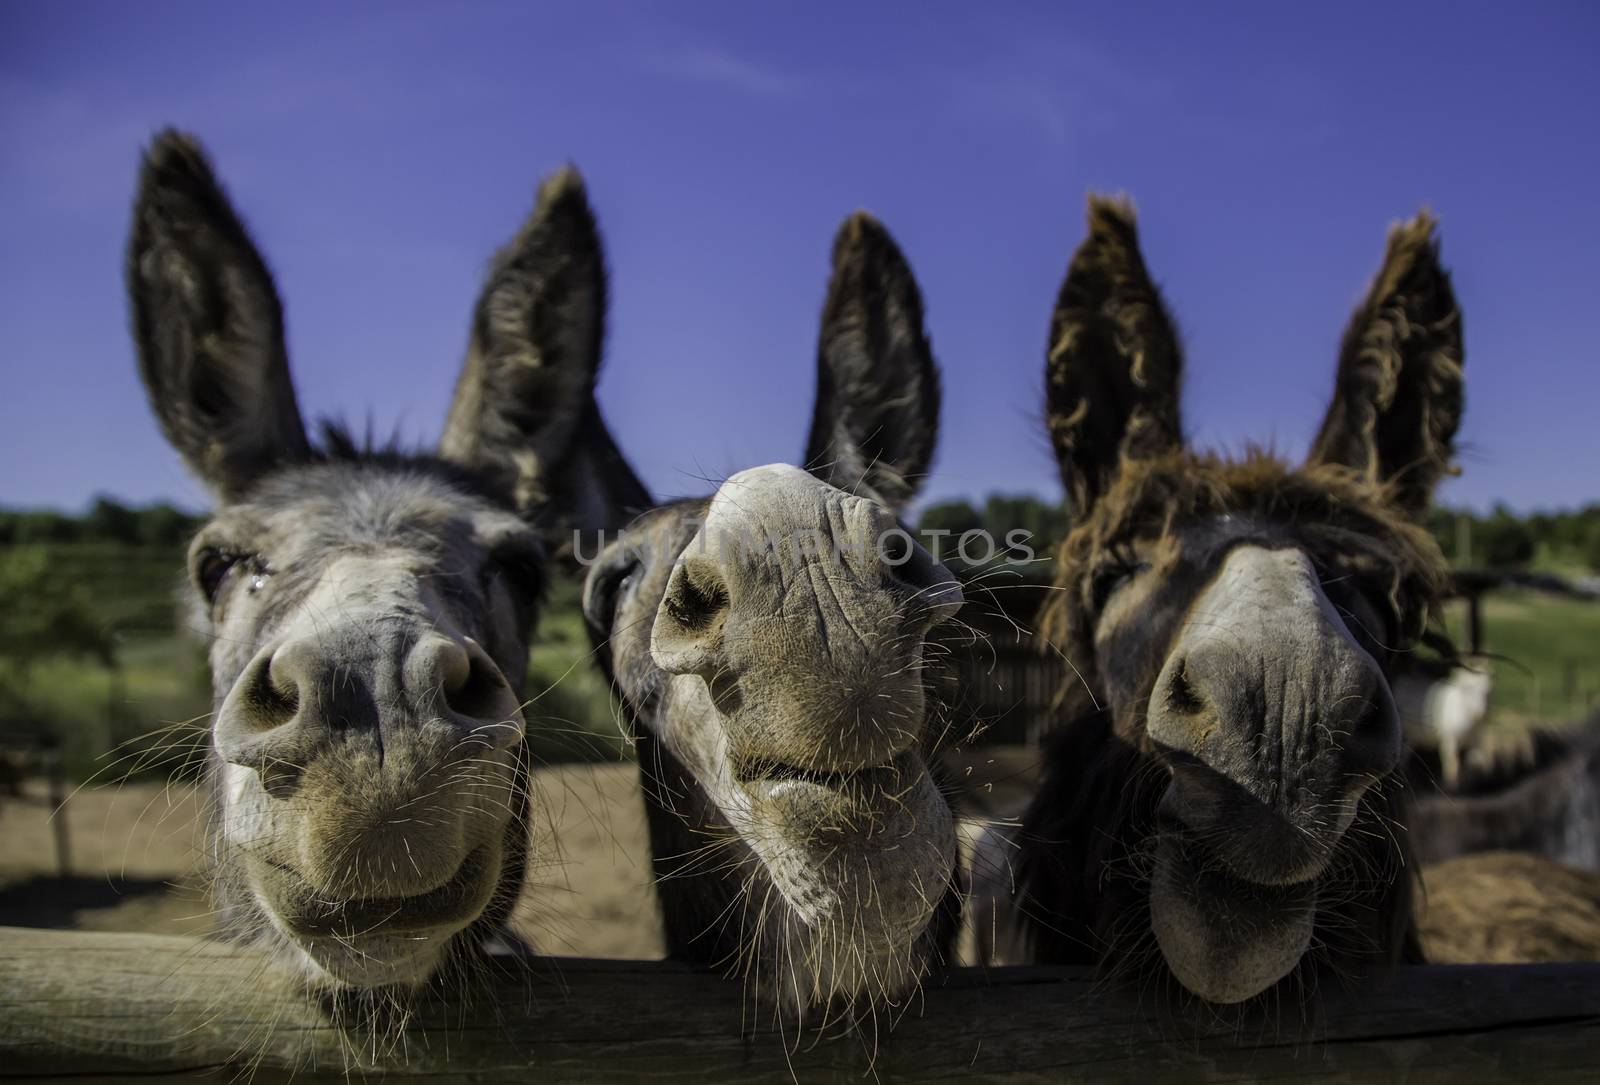 Smiling farm donkeys by esebene